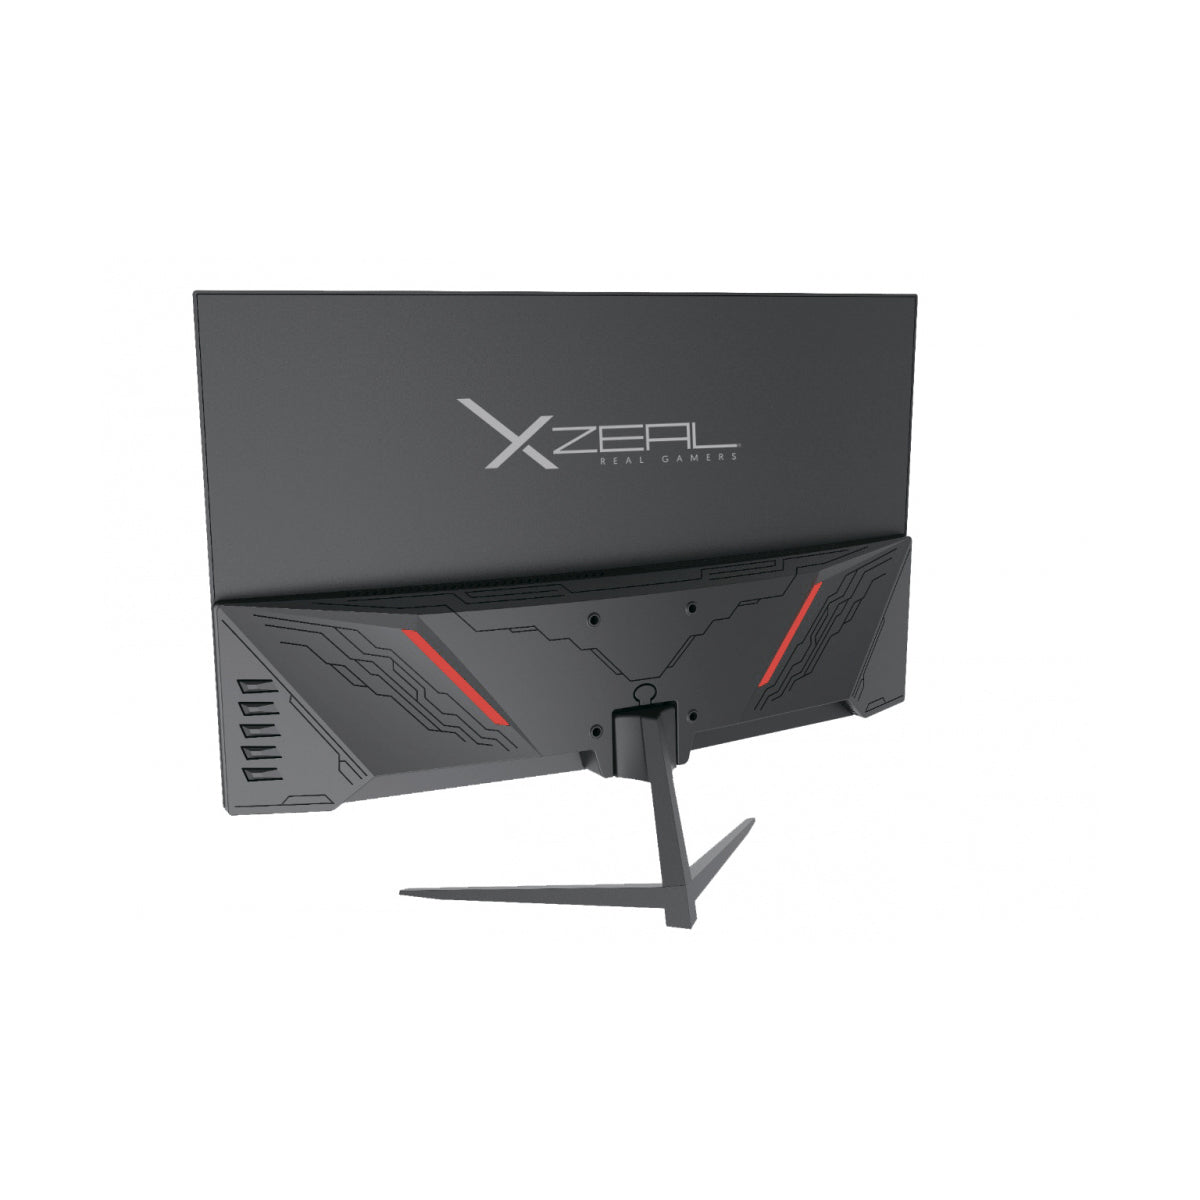 MONITOR LED XZEAL 23.8 (XZMX351B) XZ3015-1, CURVO,FHD 165HZ 1MS, 1*DP, 1*HDMI, 1*USB 1.0, NEGRO